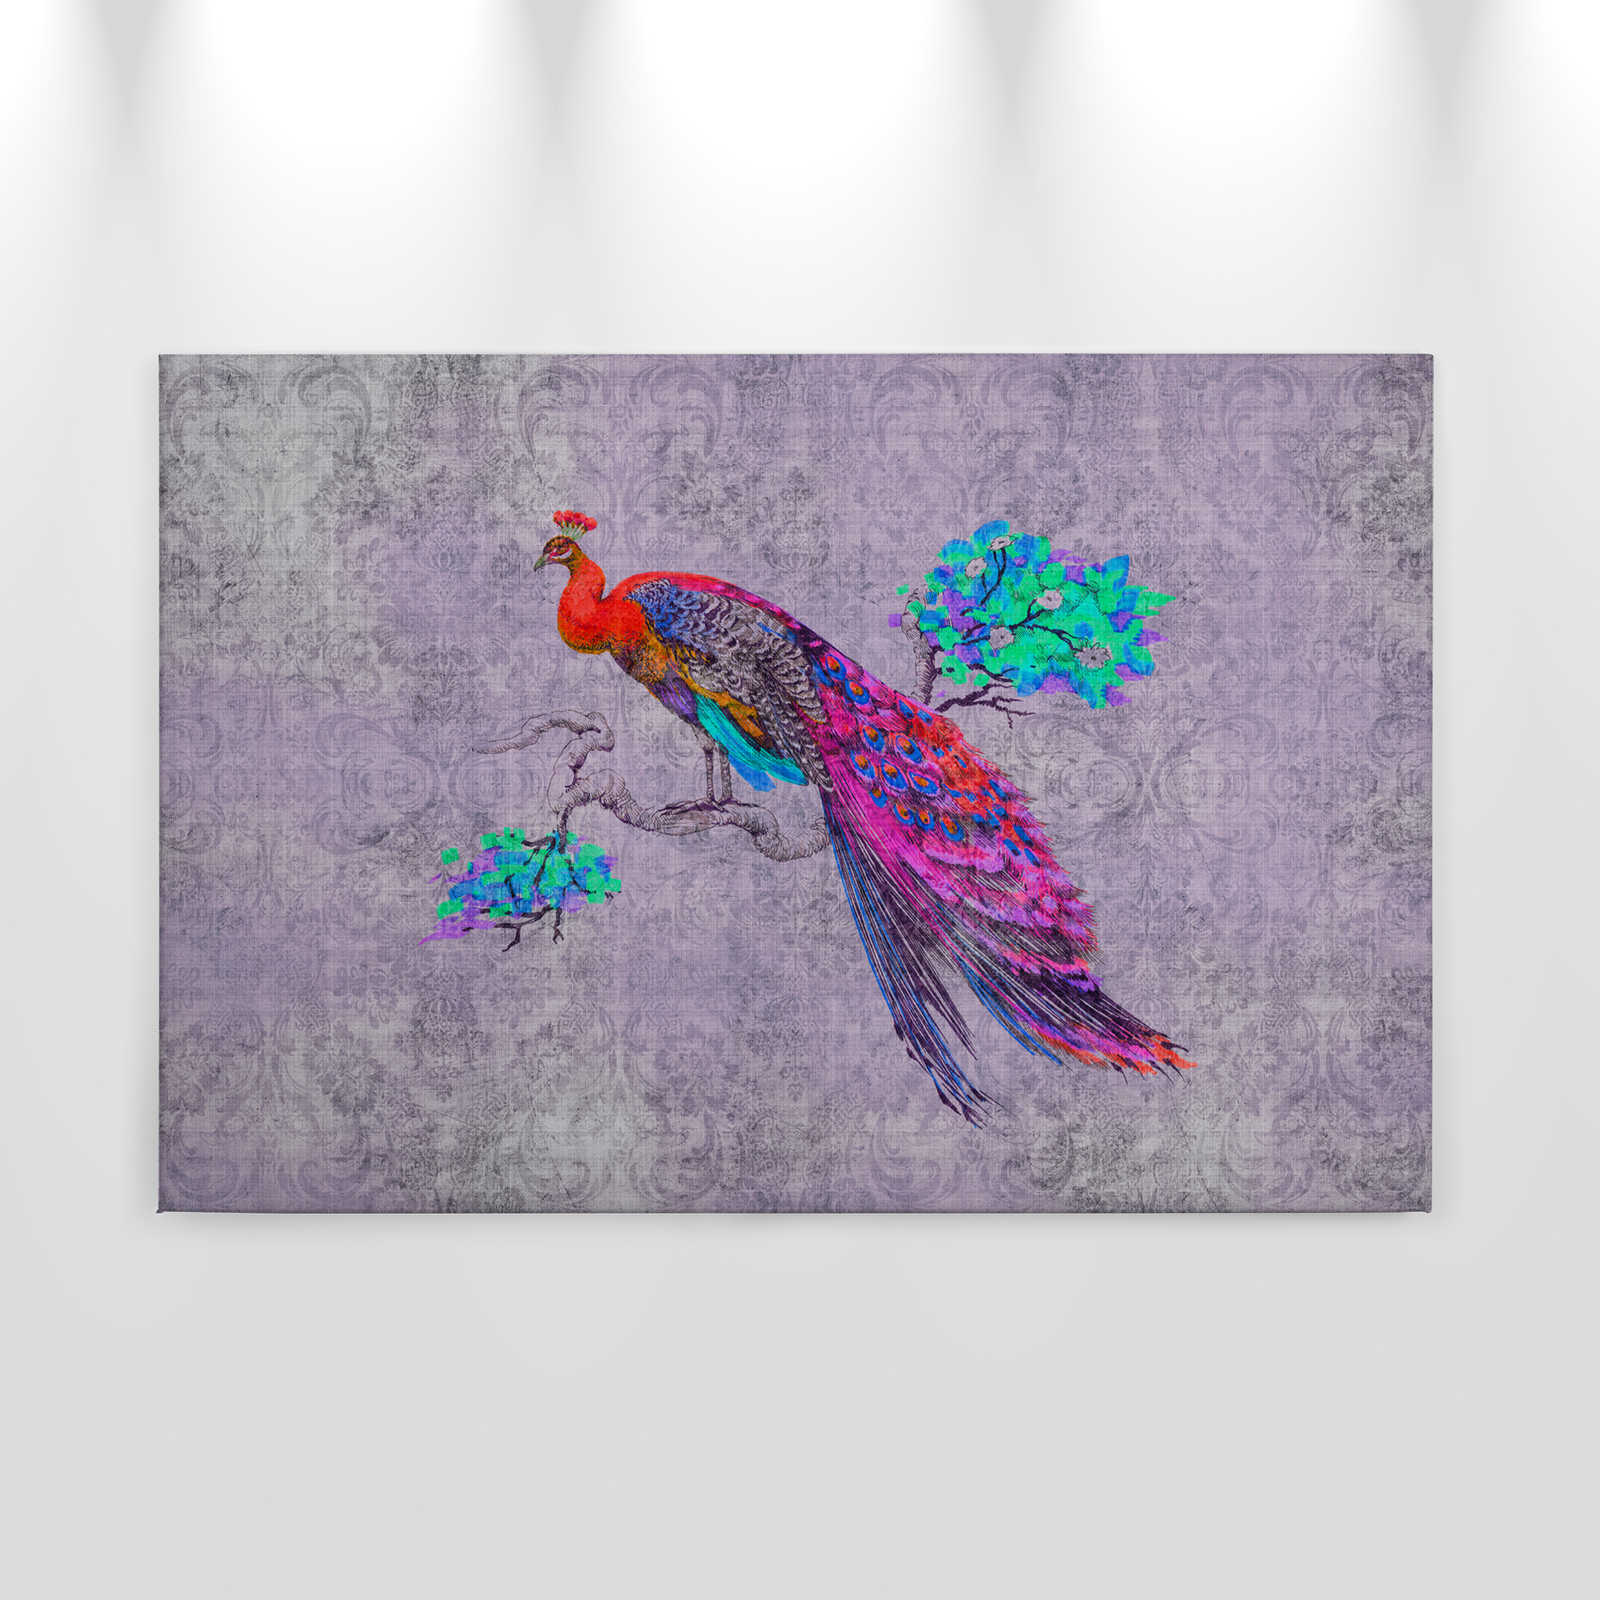             Peacock 3 - Tableau toile avec paon coloré - structure lin naturel - 0,90 m x 0,60 m
        